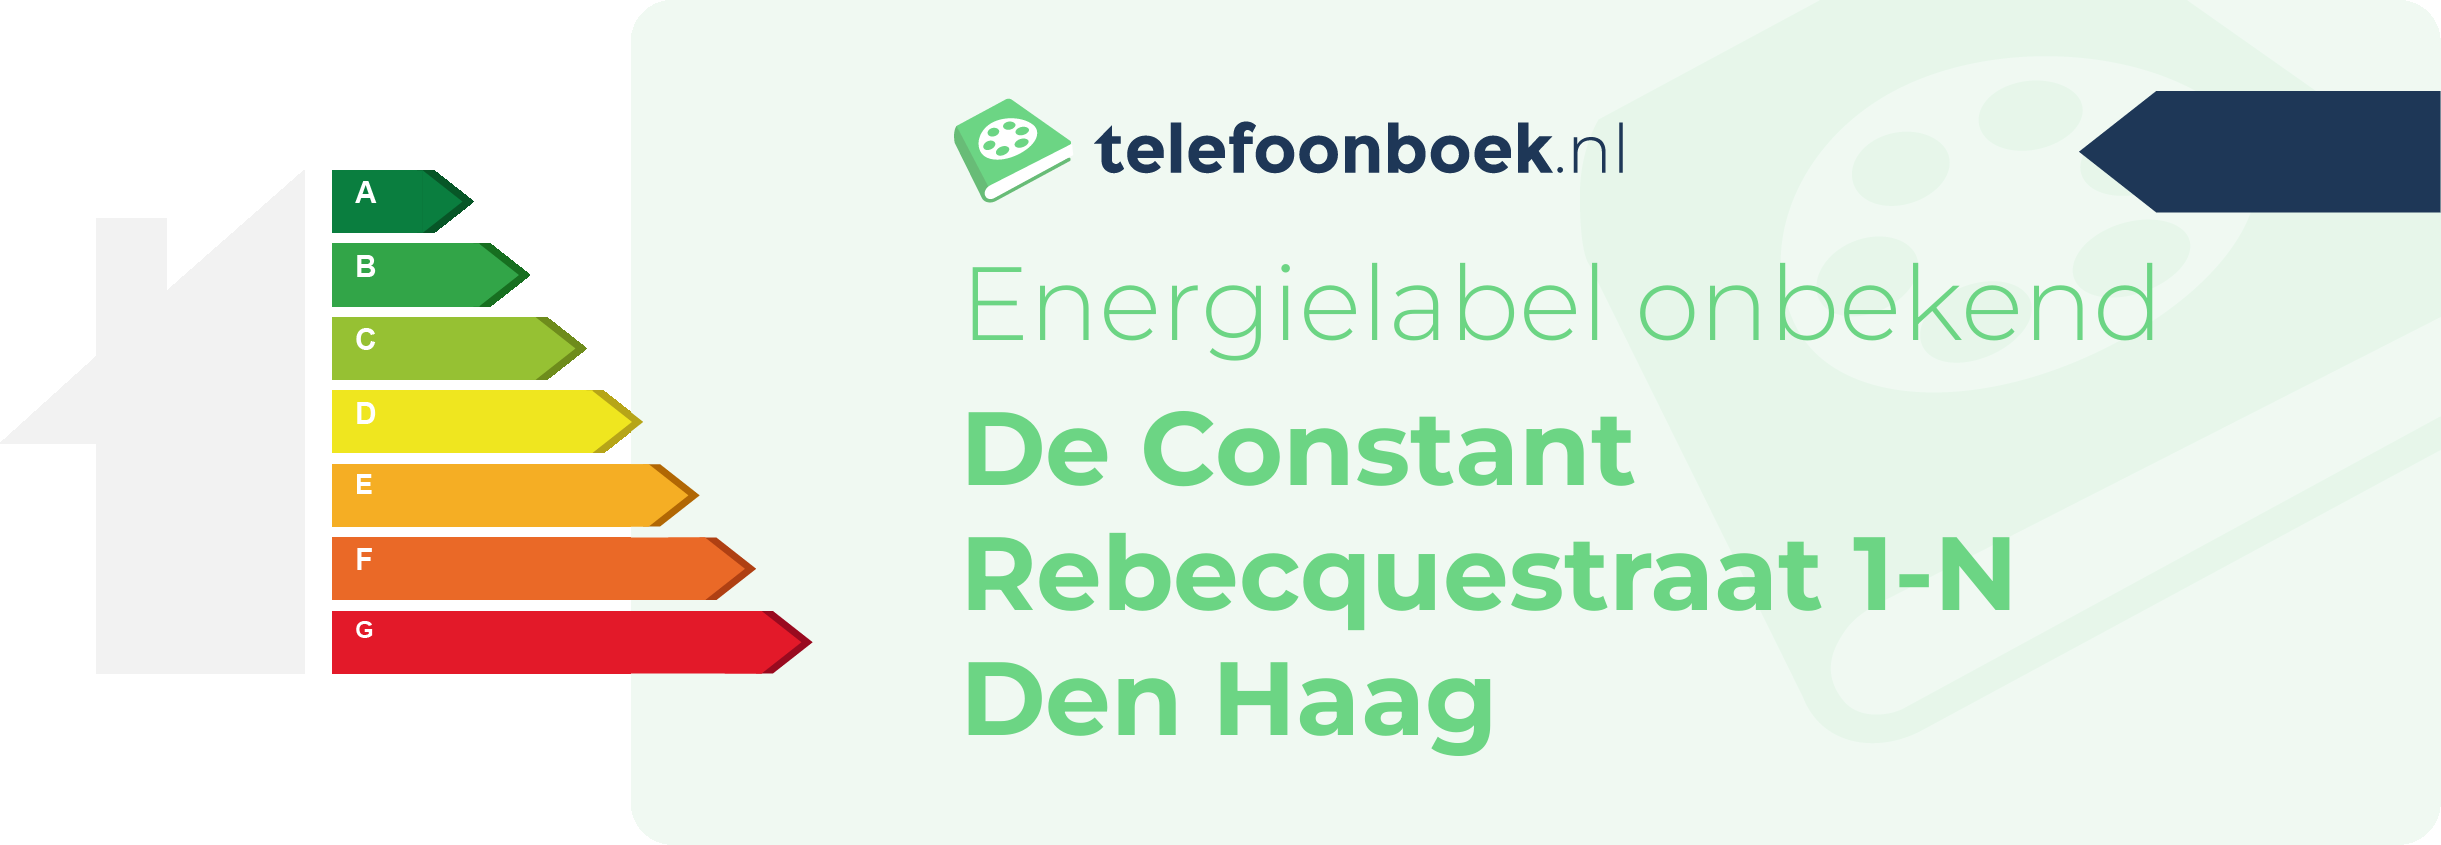 Energielabel De Constant Rebecquestraat 1-N Den Haag